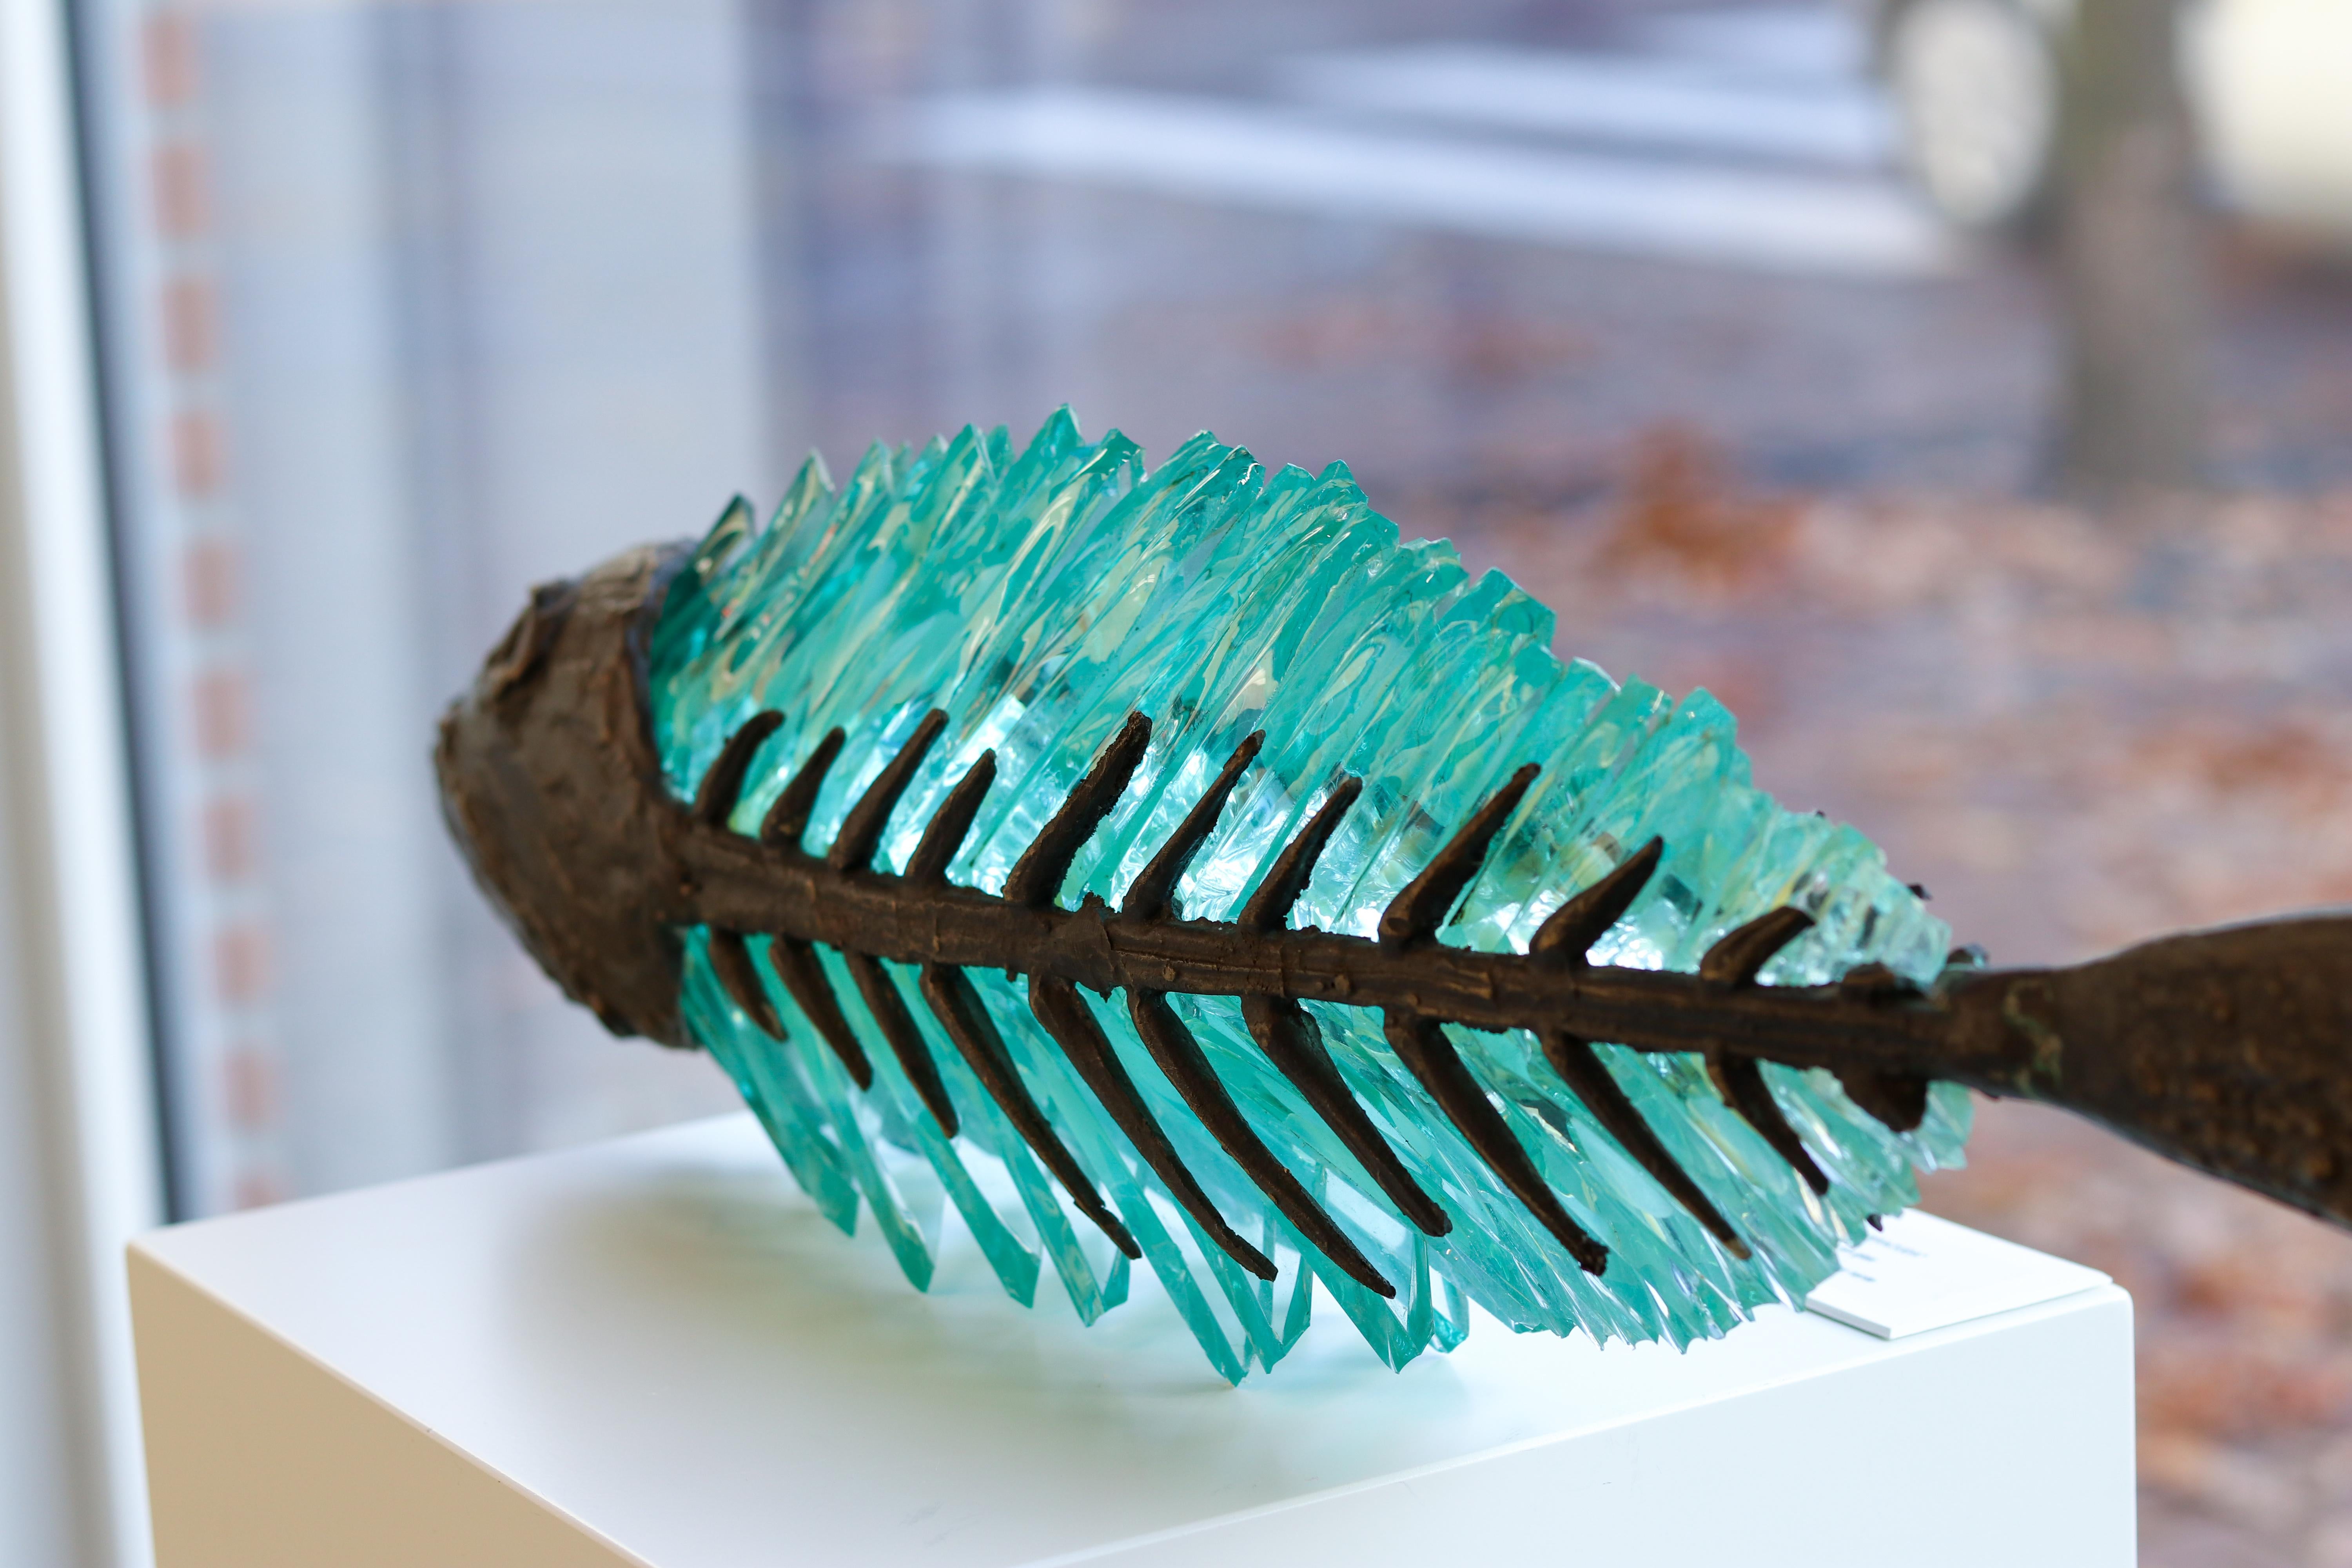 Entrapped fish - Barracuda, 21st Century Contemporary Sculpture by Yrgos Kypris 7